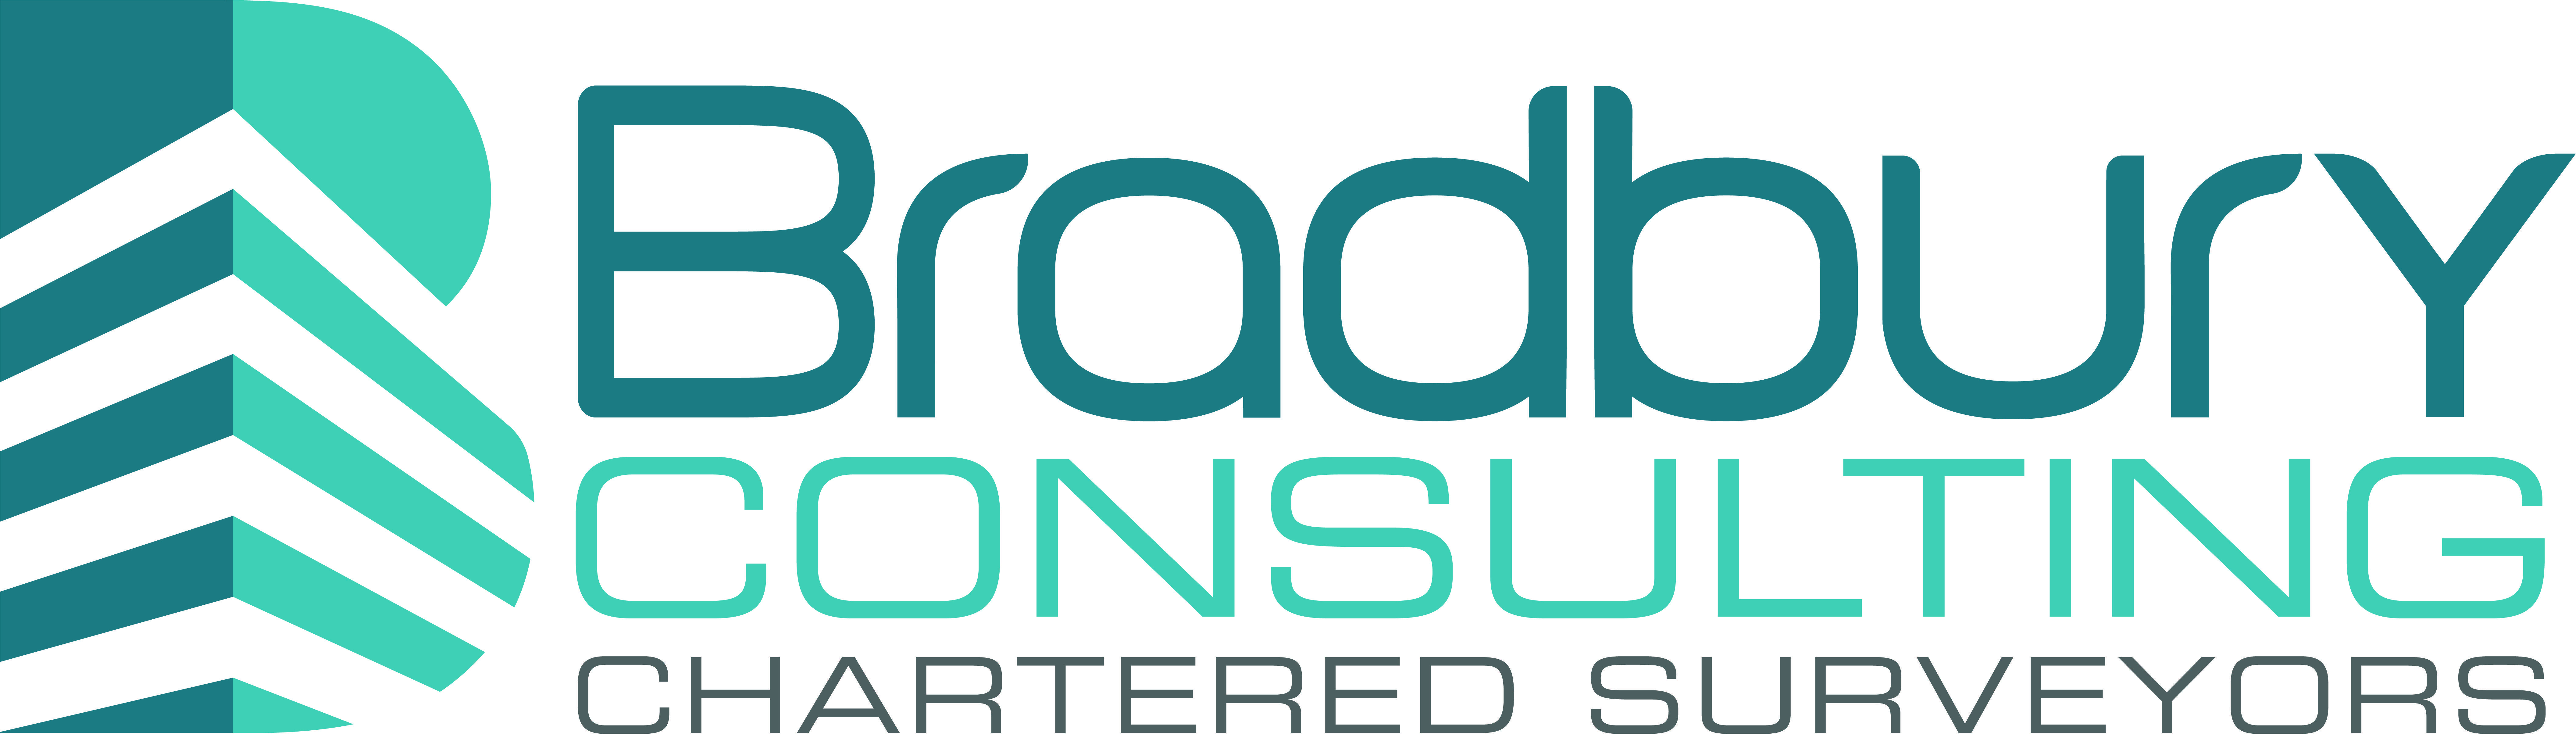 Bradbury Logo - Bradbury Consulting